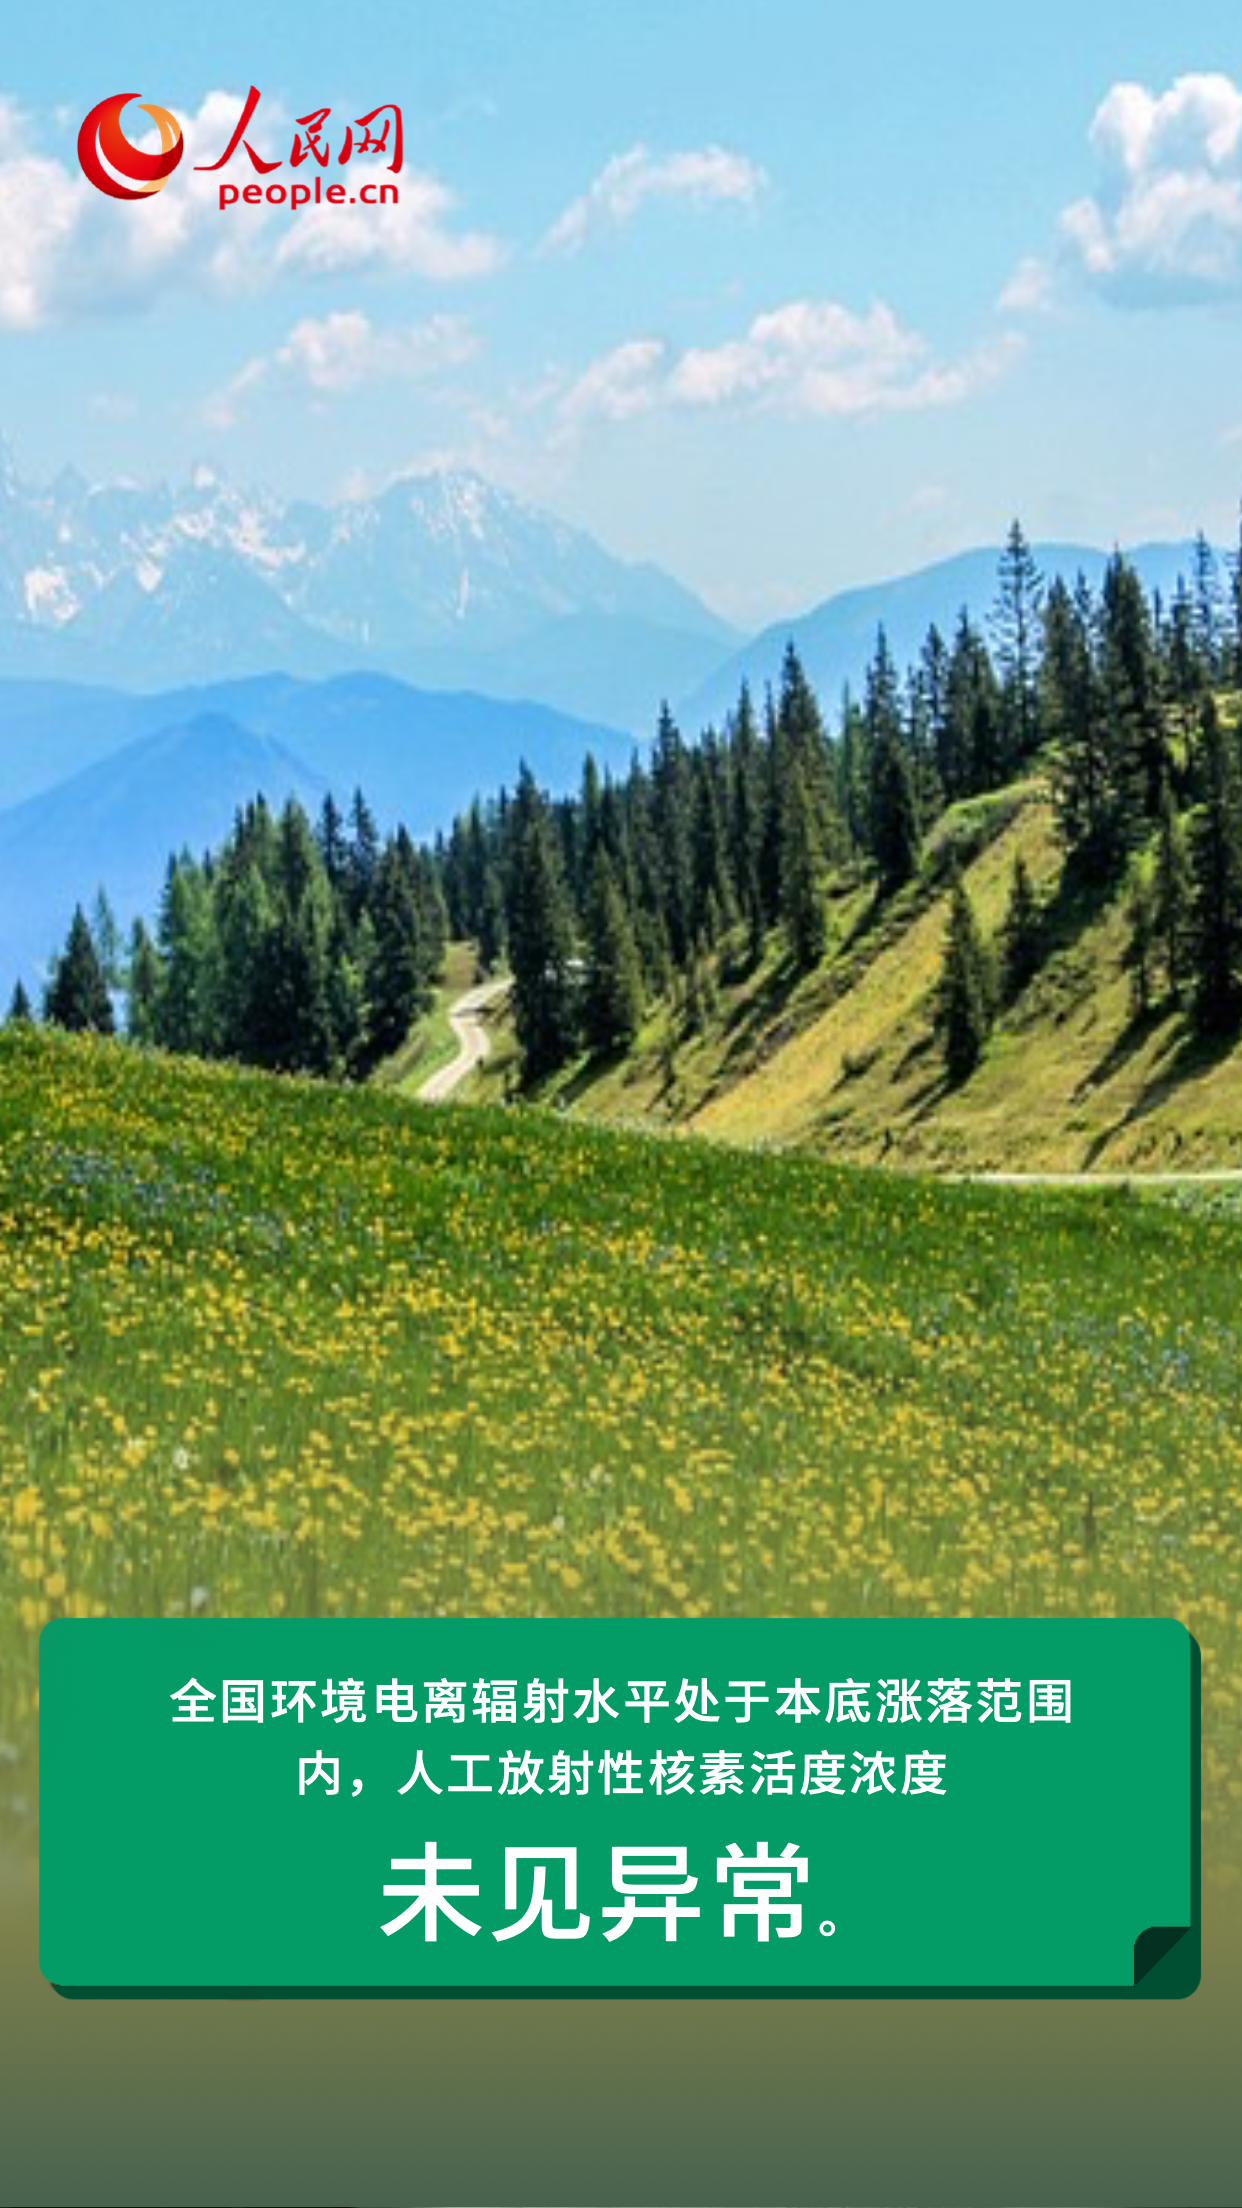 6·5環境日特別策劃|守護藍天碧水淨土 繪就生態環境保護新畫卷【9】